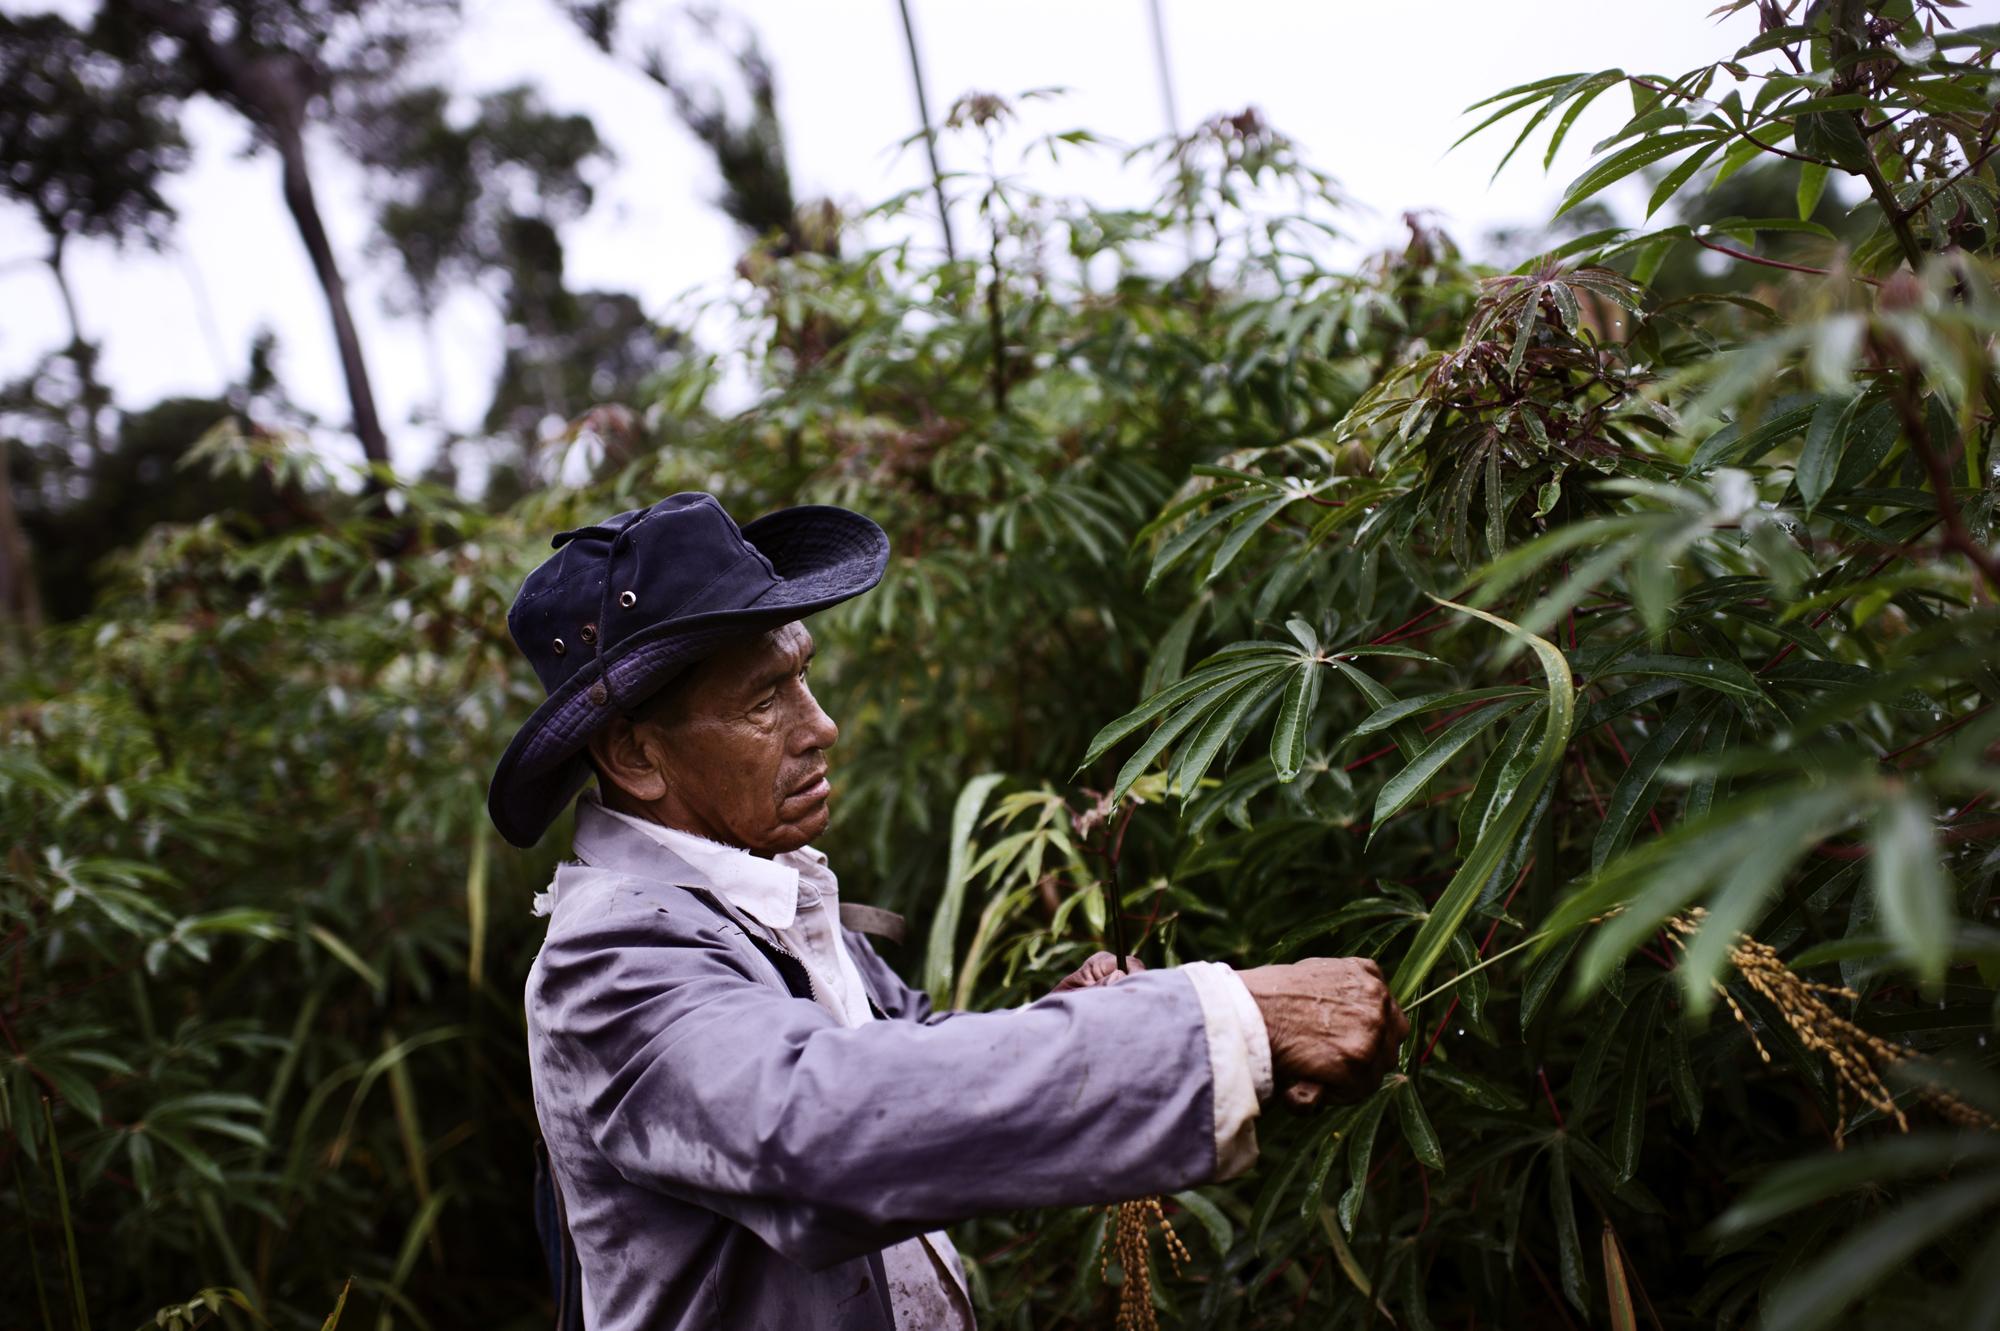 Food Justice - Bolivia, the Amazon, San Juan del Urucú.
Manuel...